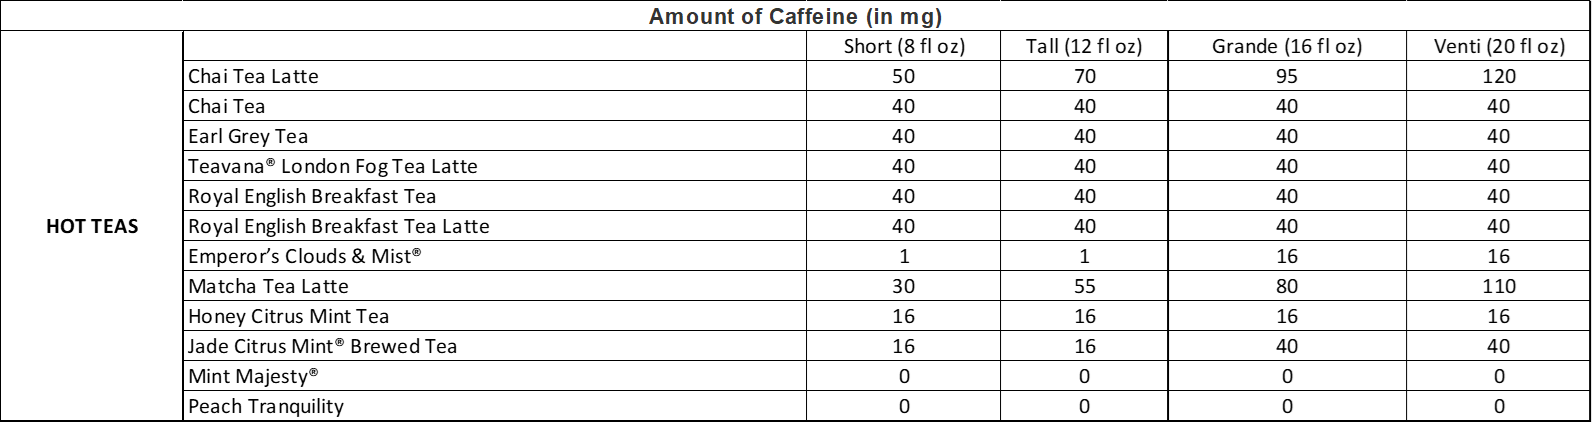 Amount of Caffeine in Starbucks Hot Teas